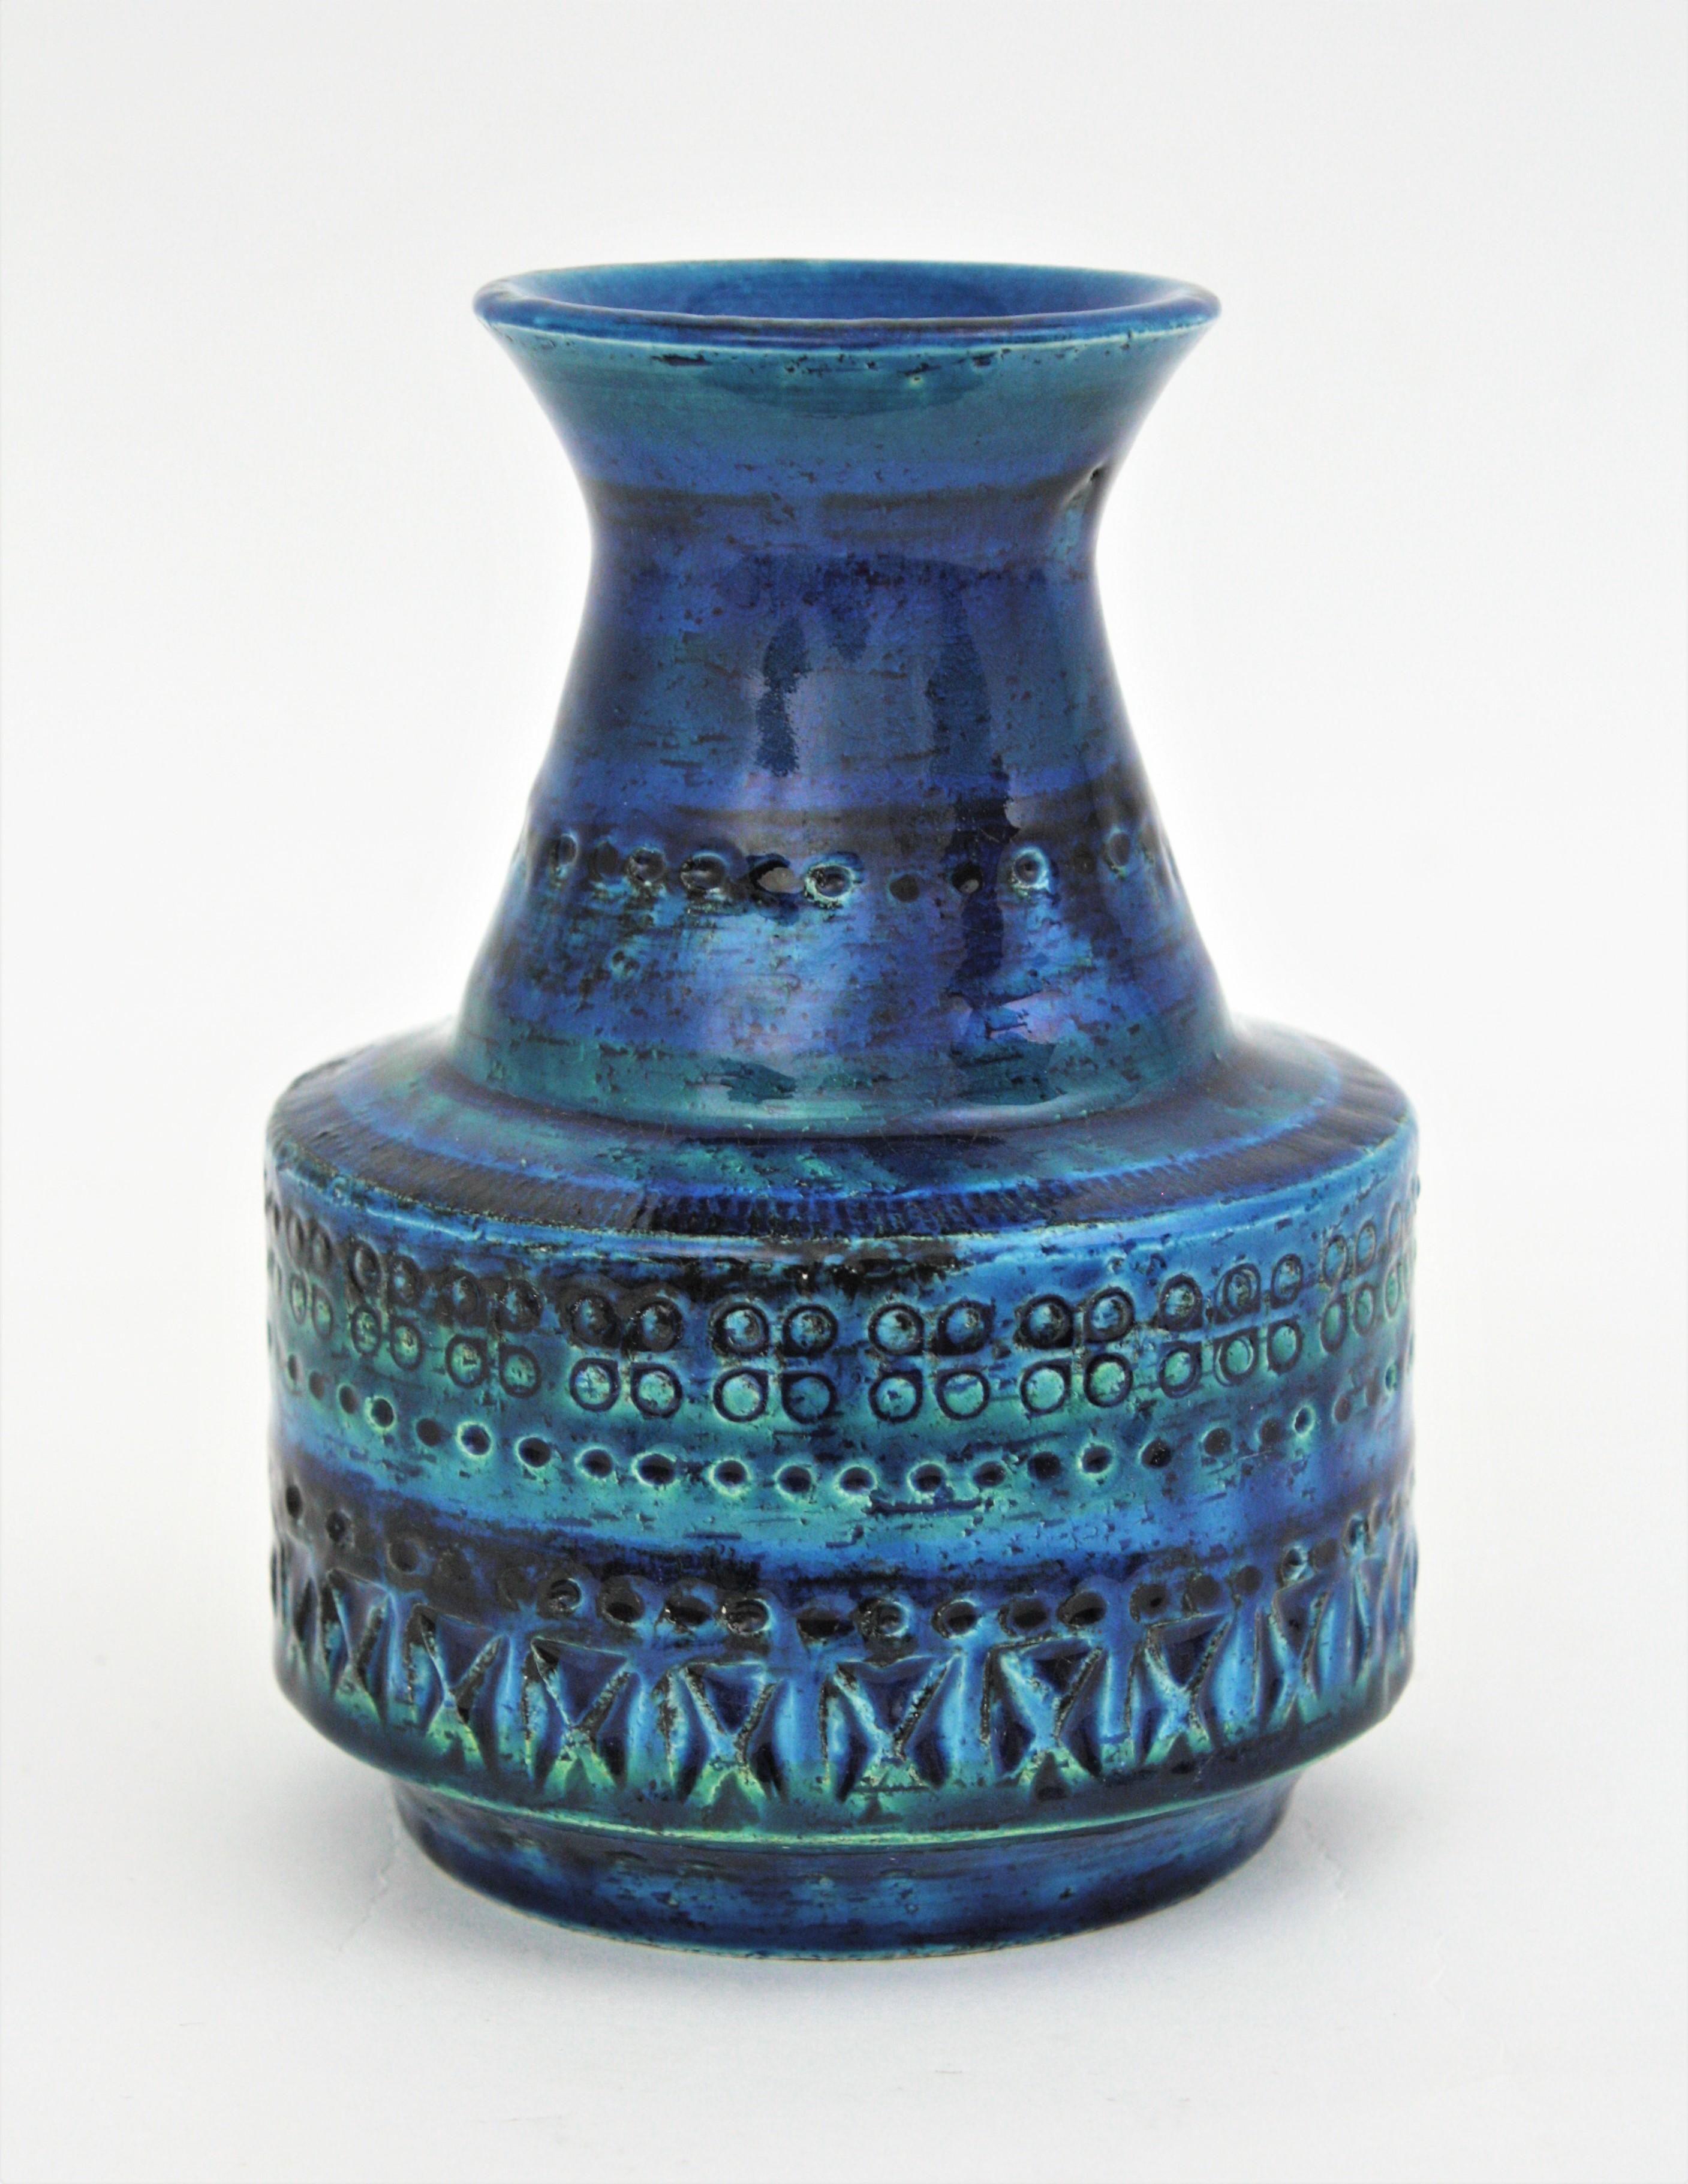 Italian Bitossi Aldo Londi Rimini Blue Glazed Ceramic Conic Vase, 1960s